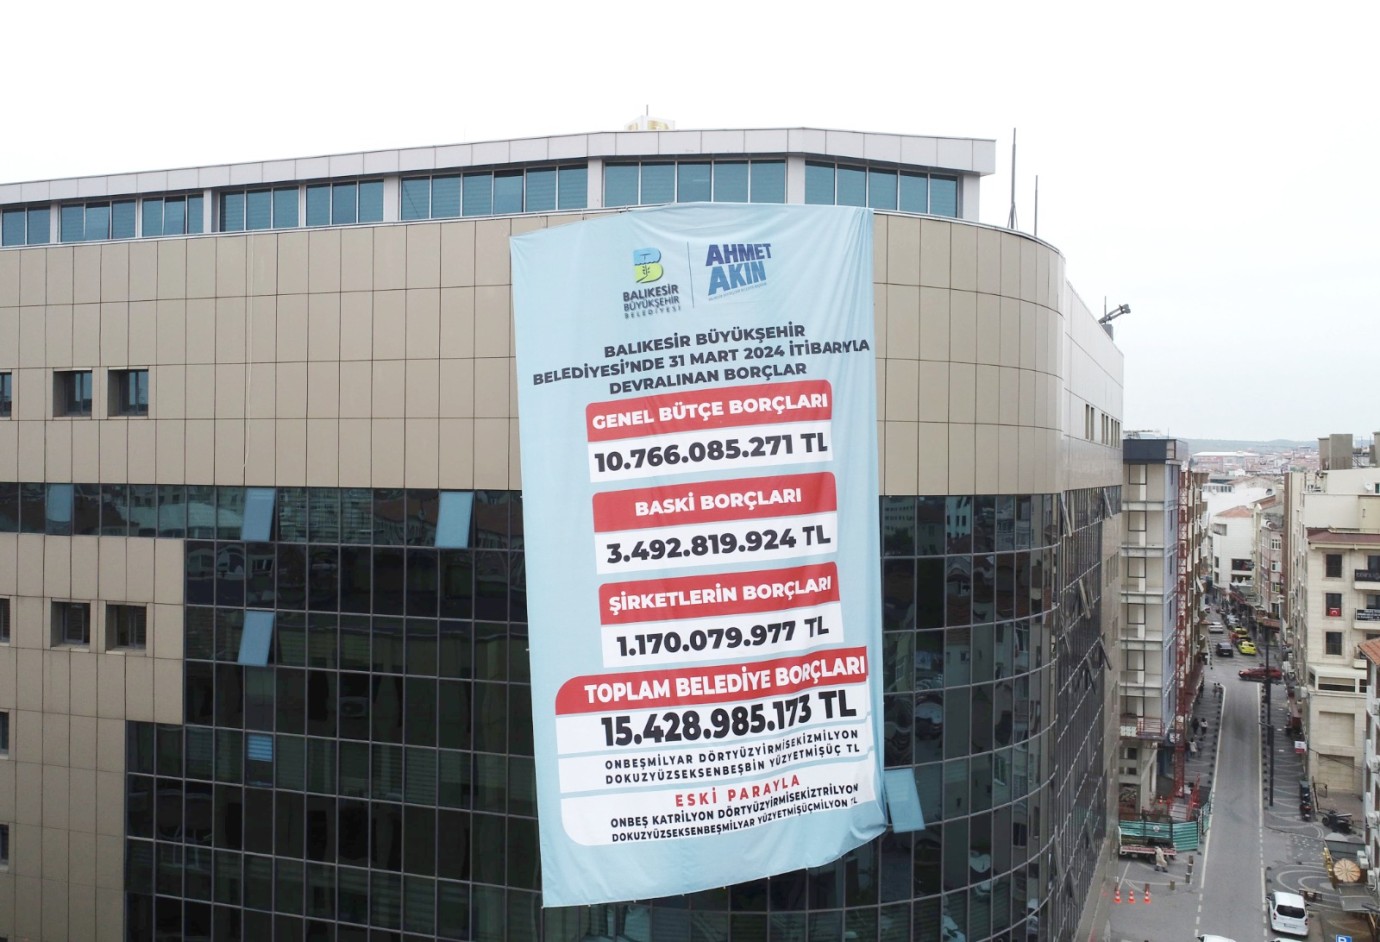 Balıkesir Büyükşehir’de devralınan toplam borç: 15.5 Milyar TL